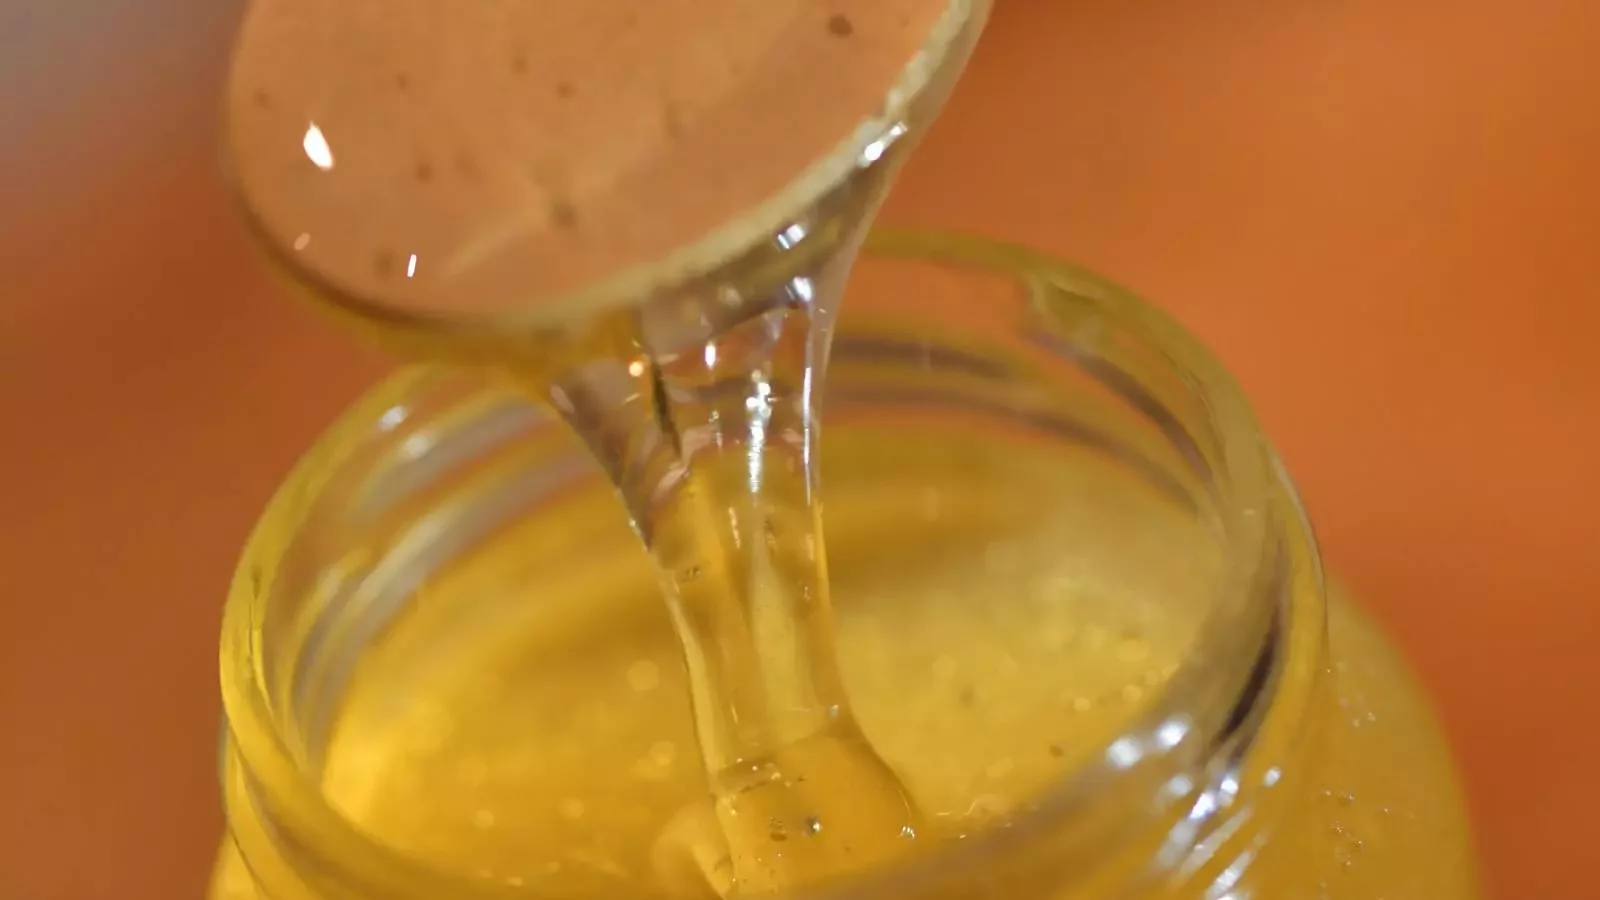 Miel Pressé à froid: un miel biologique exceptionnel.